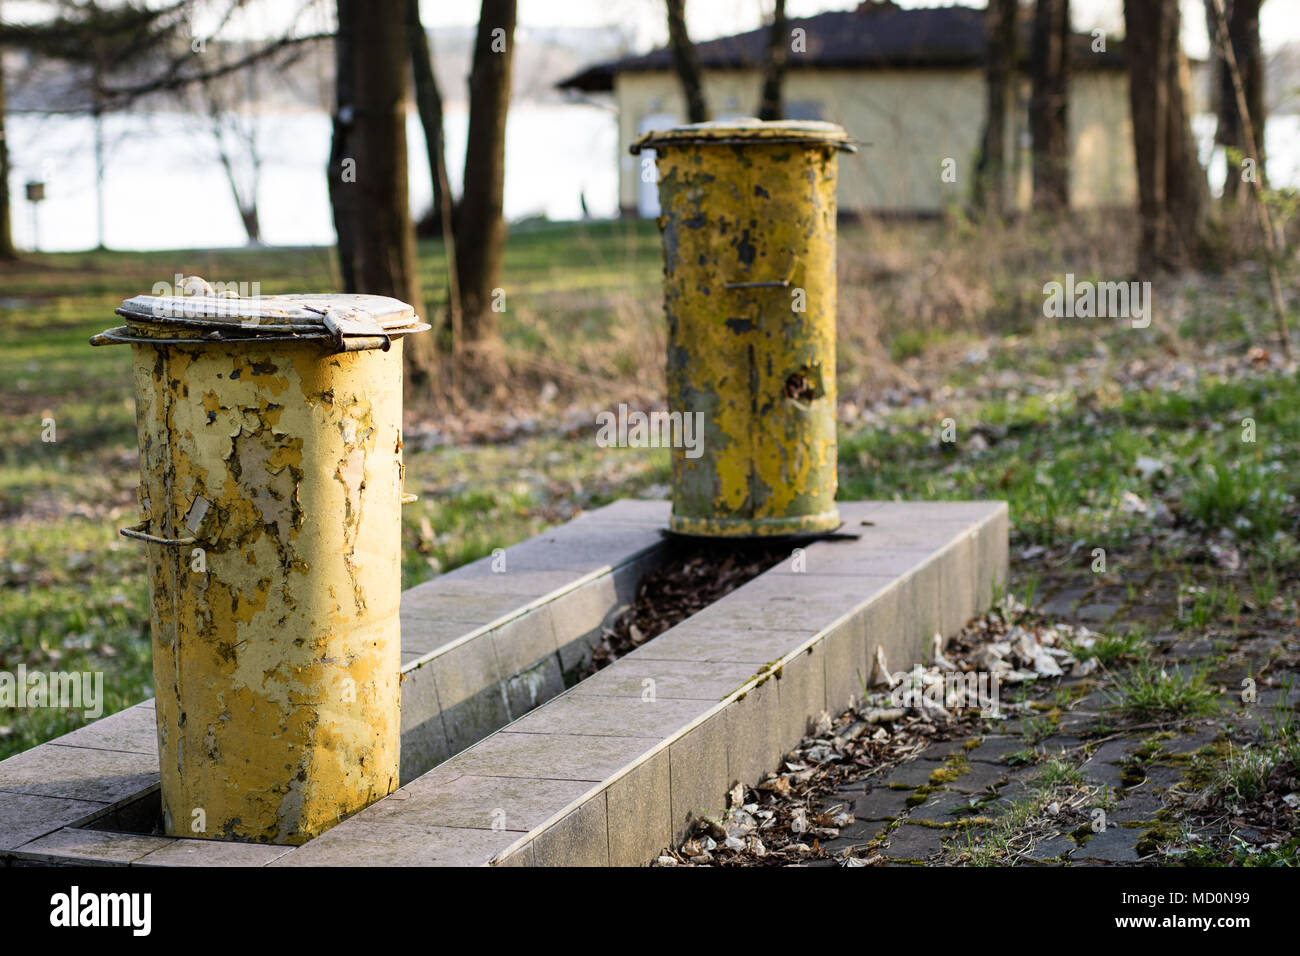 Une vieille poubelle. Poubelles de déchets situé dans un parc entre des  arbres sur une fondation en béton. La saison de printemps Photo Stock -  Alamy